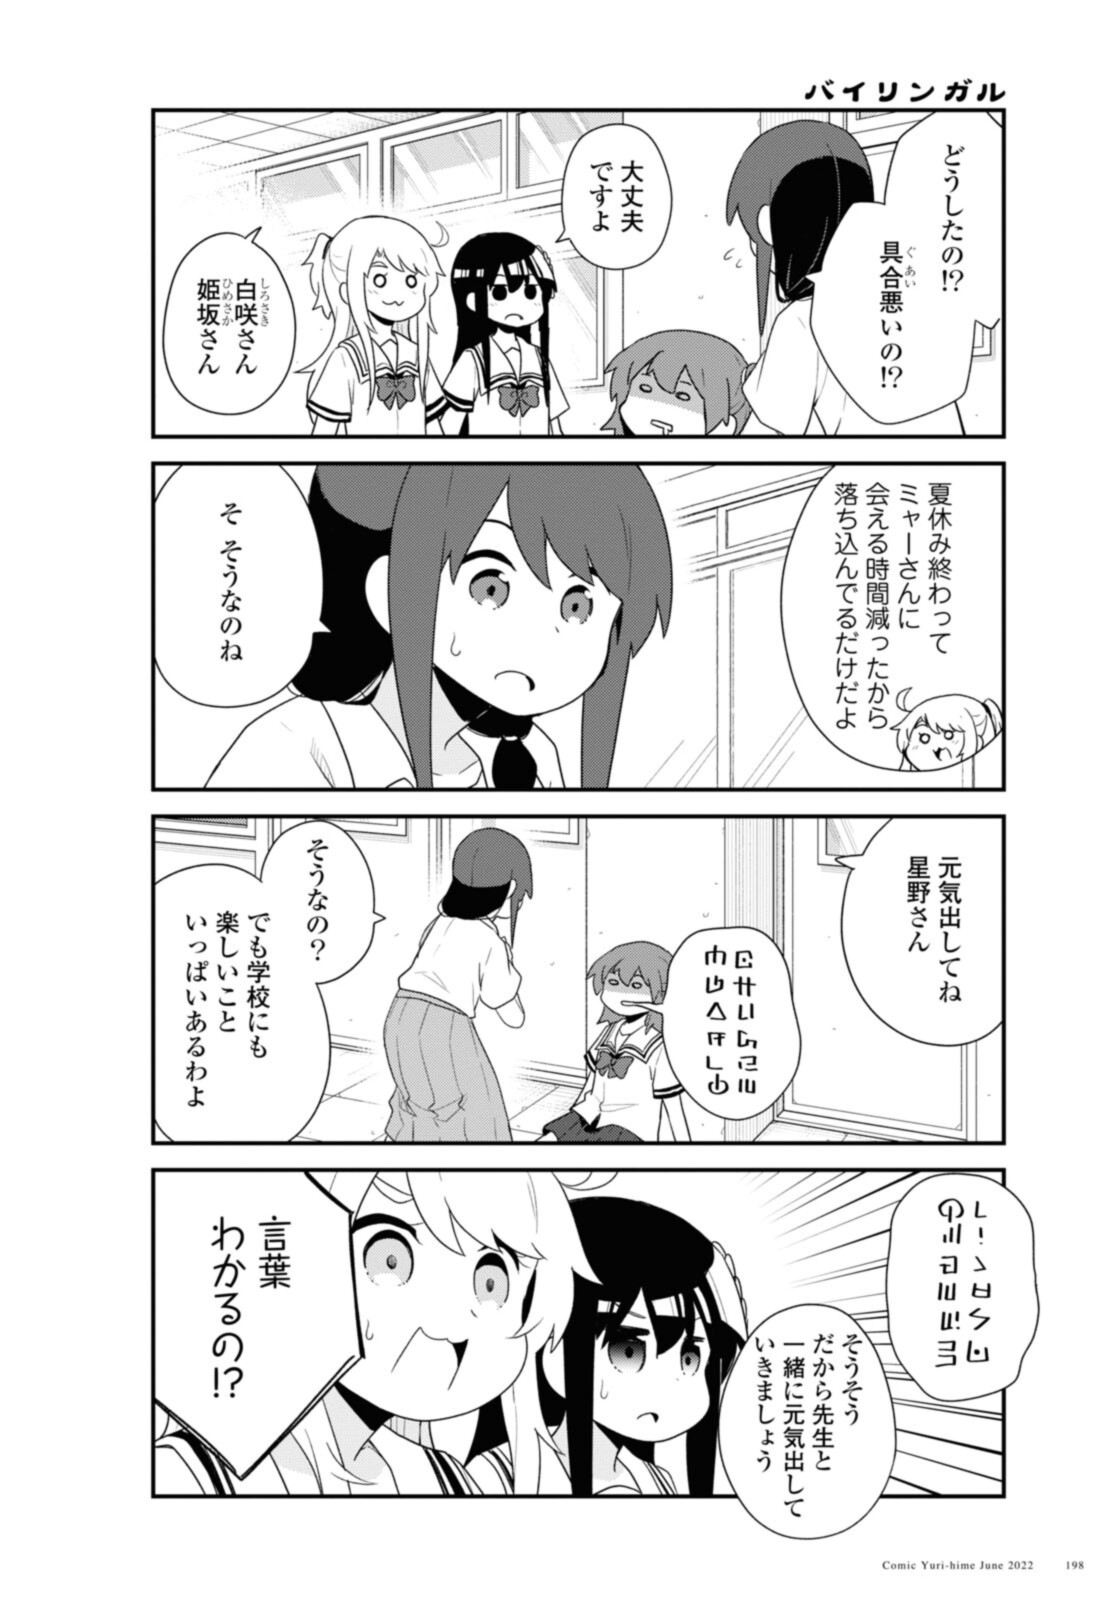 Watashi ni Tenshi ga Maiorita! - Chapter 96 - Page 4